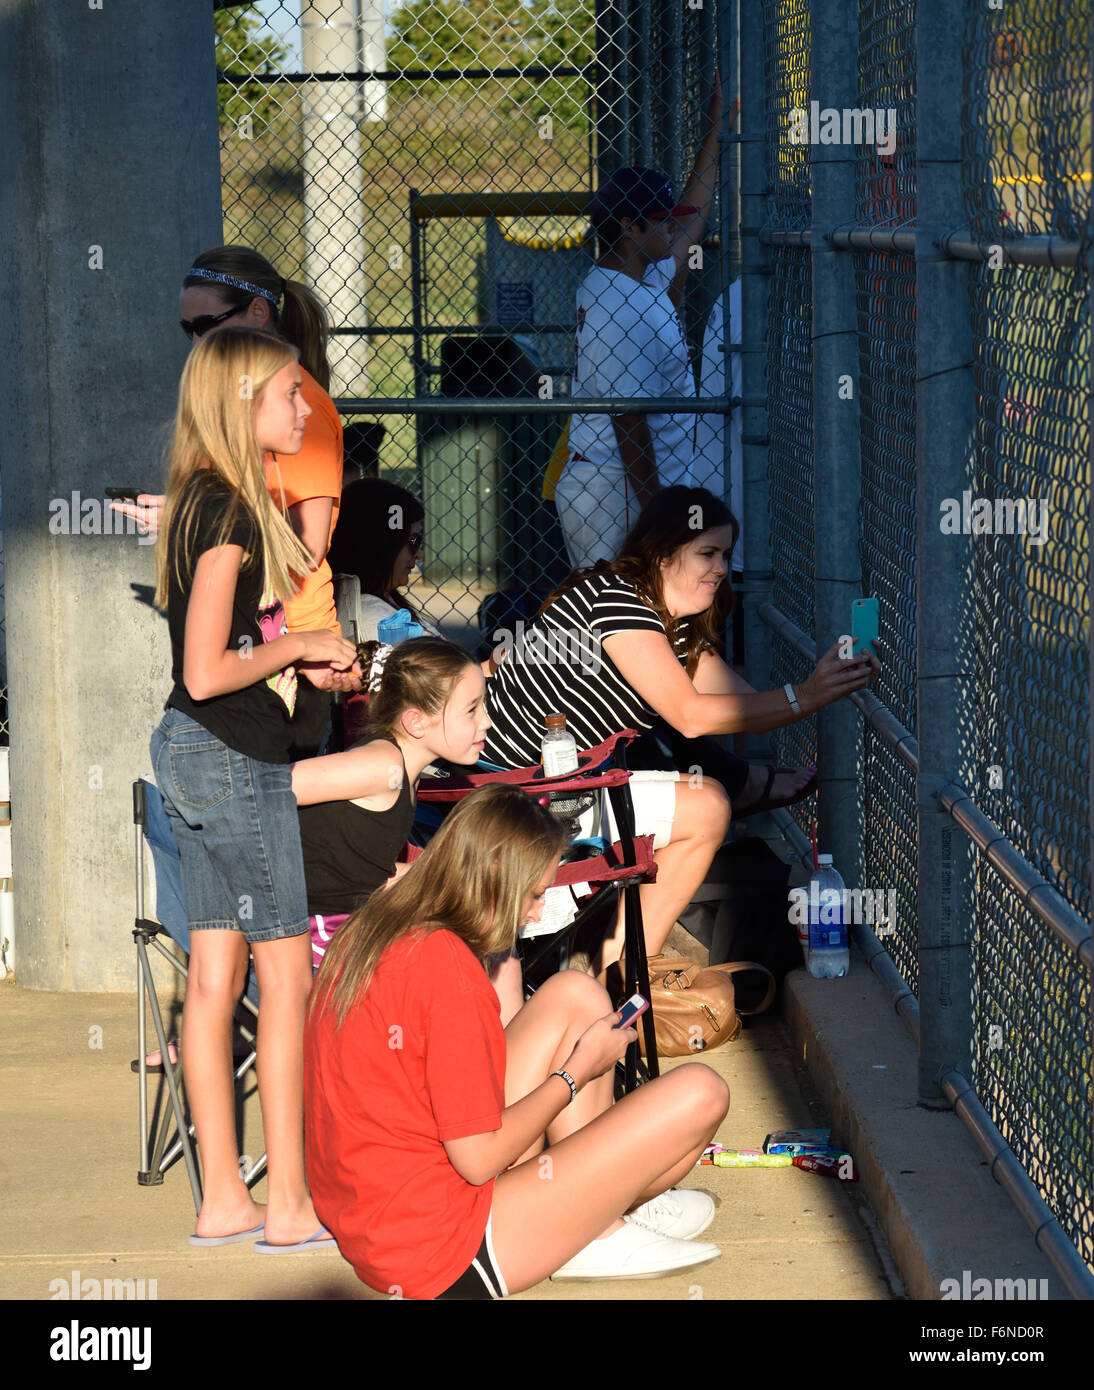 Le ragazze ad una partita di baseball e ciascuno ha il proprio dispositivo mobile. Foto Stock